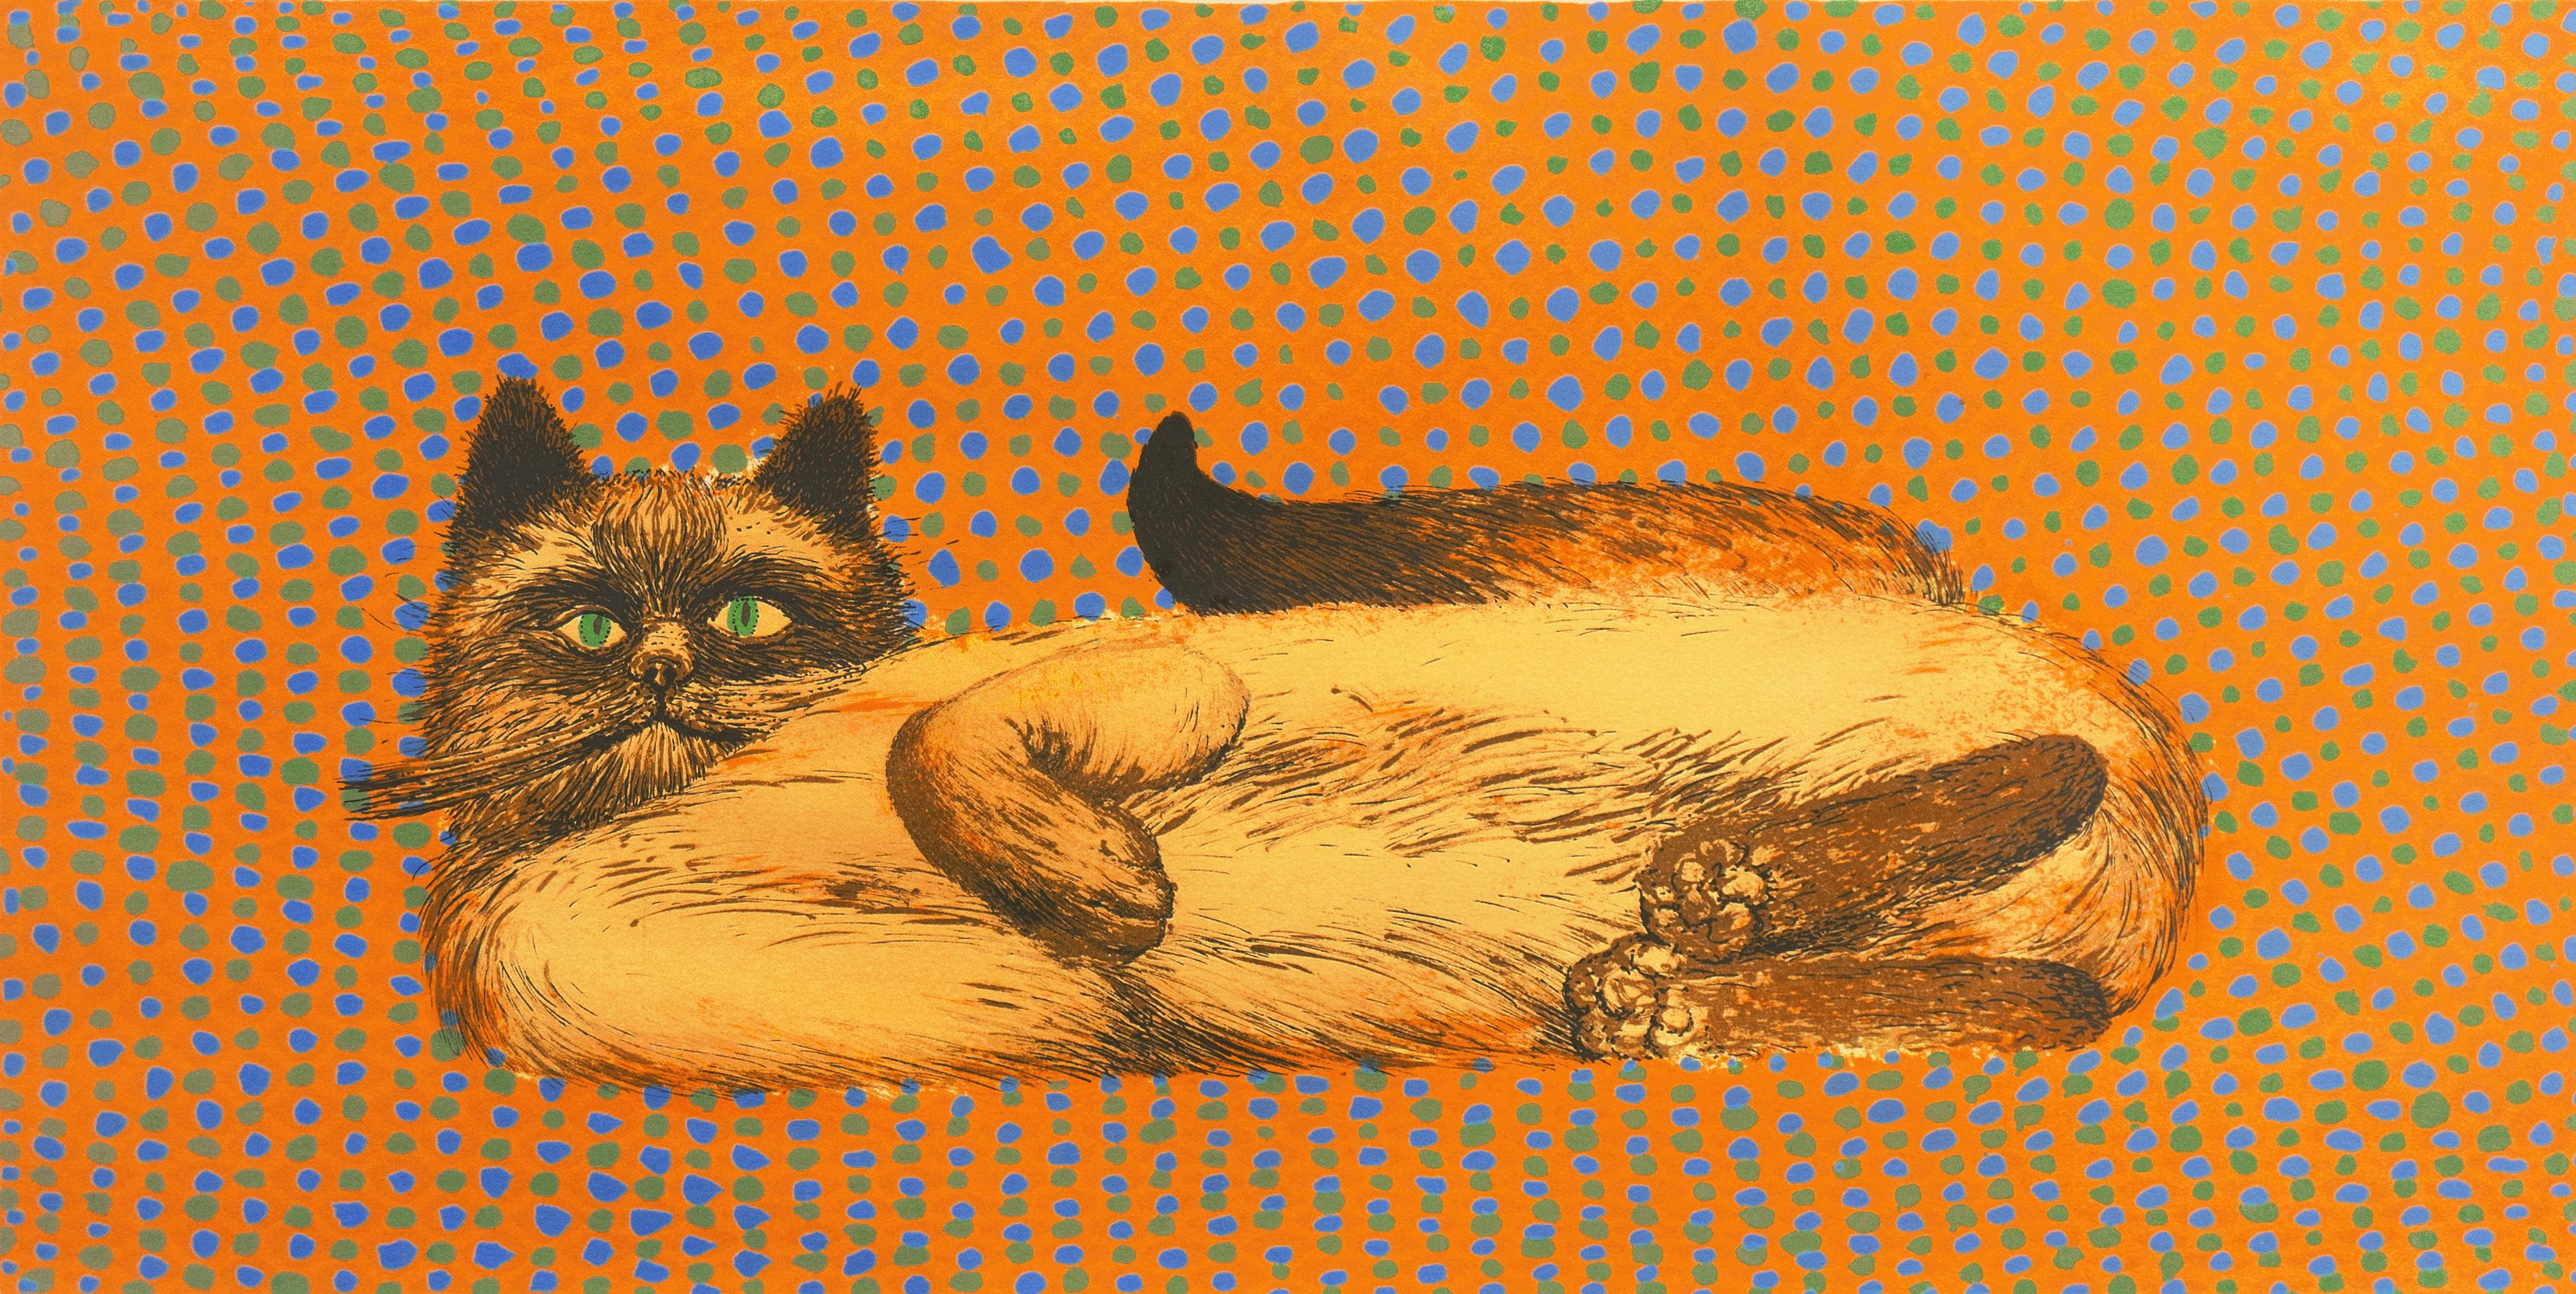 Juvenal Sanso Animal Print - 'Fat Cat', Philippines, Paris, Ecole des Beaux-Arts, Metropolitan Museum, MOMA